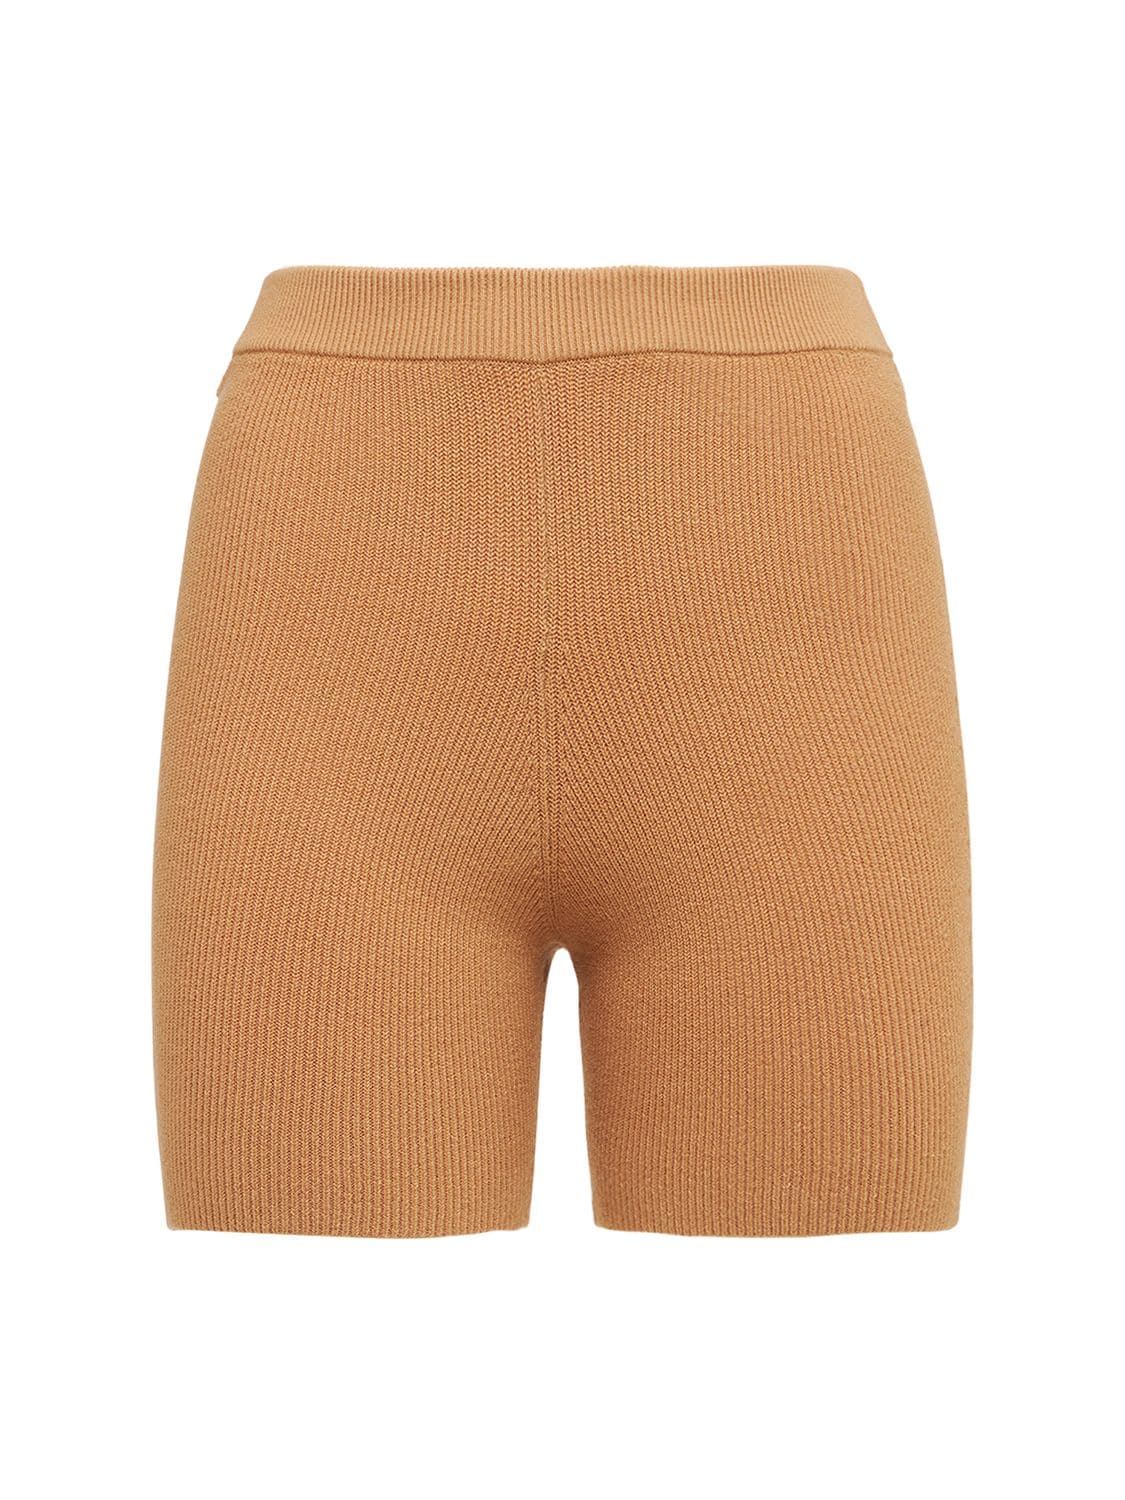 Arch Peachskin Shorts